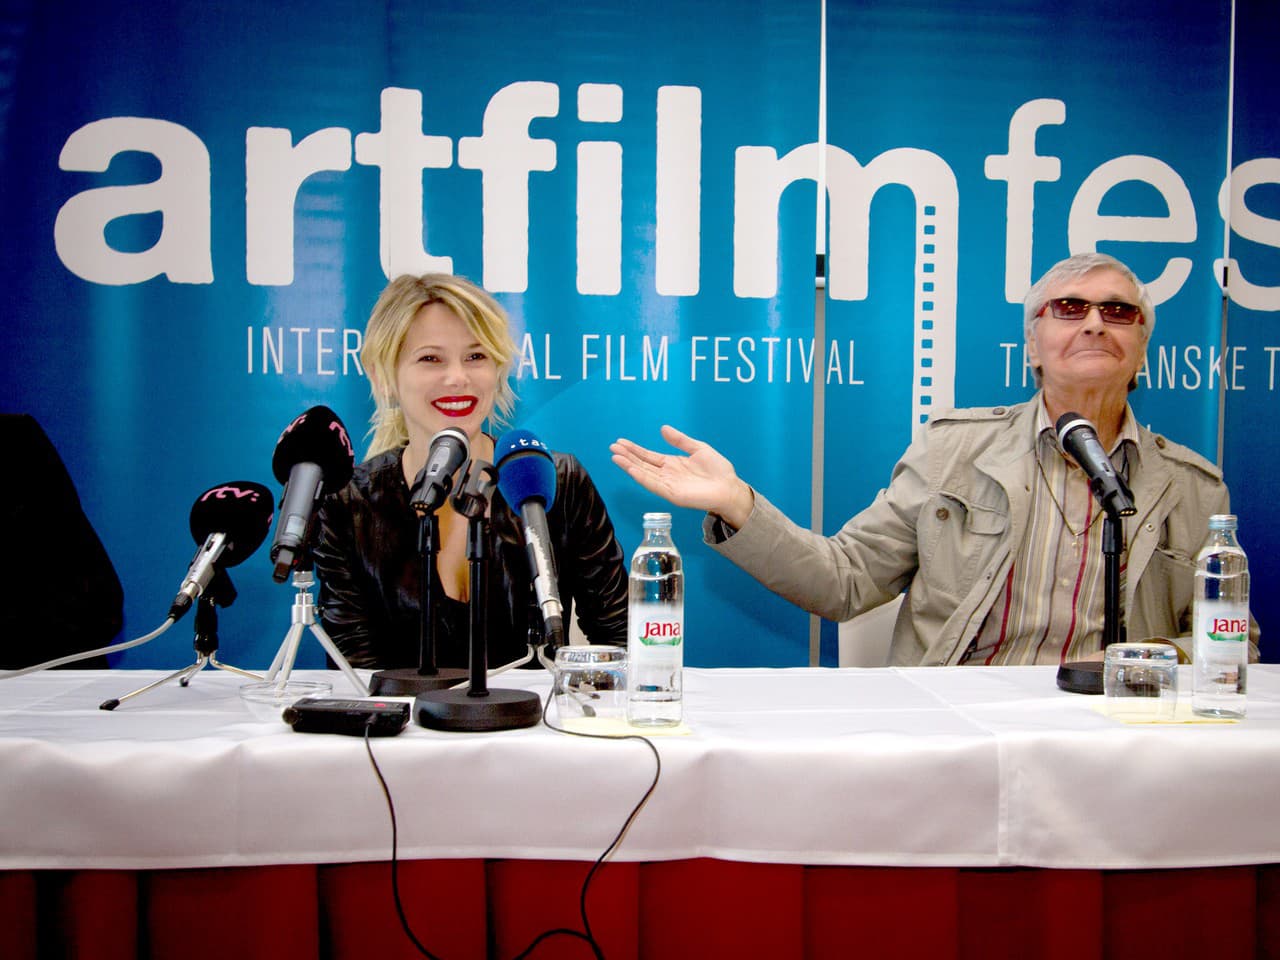 Riaditeľ festivalu Peter Nágel a talianska herecká hviezda slovenského pôvodu Barbora Bobulova počas tlačovej besedy v rámci 21. ročníka Medzinárodného filmového festivalu Art Film Fest